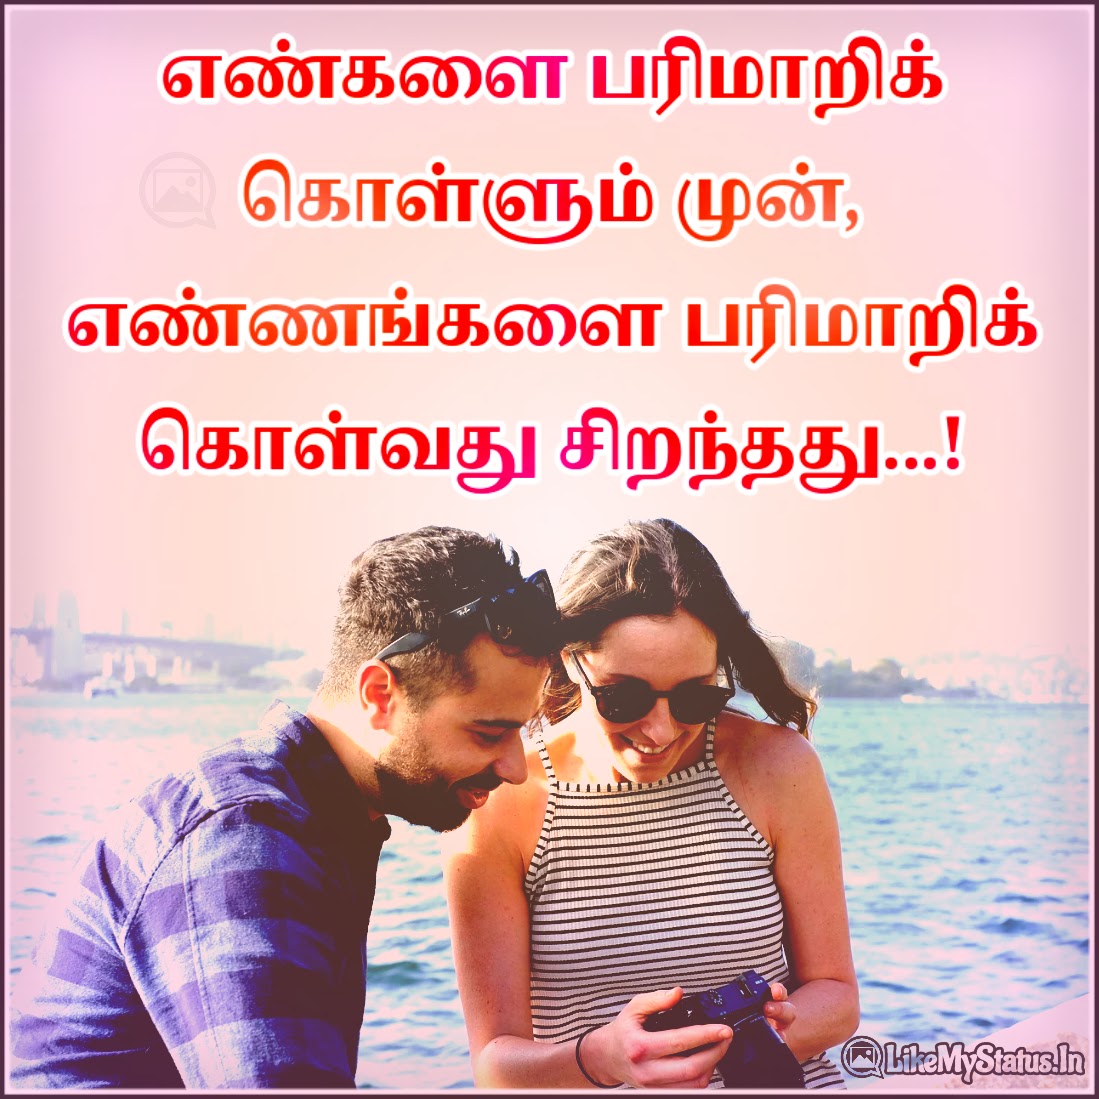 20 வாழ்க்கை ஸ்டேட்டஸ் | Tamil Whatsapp Status